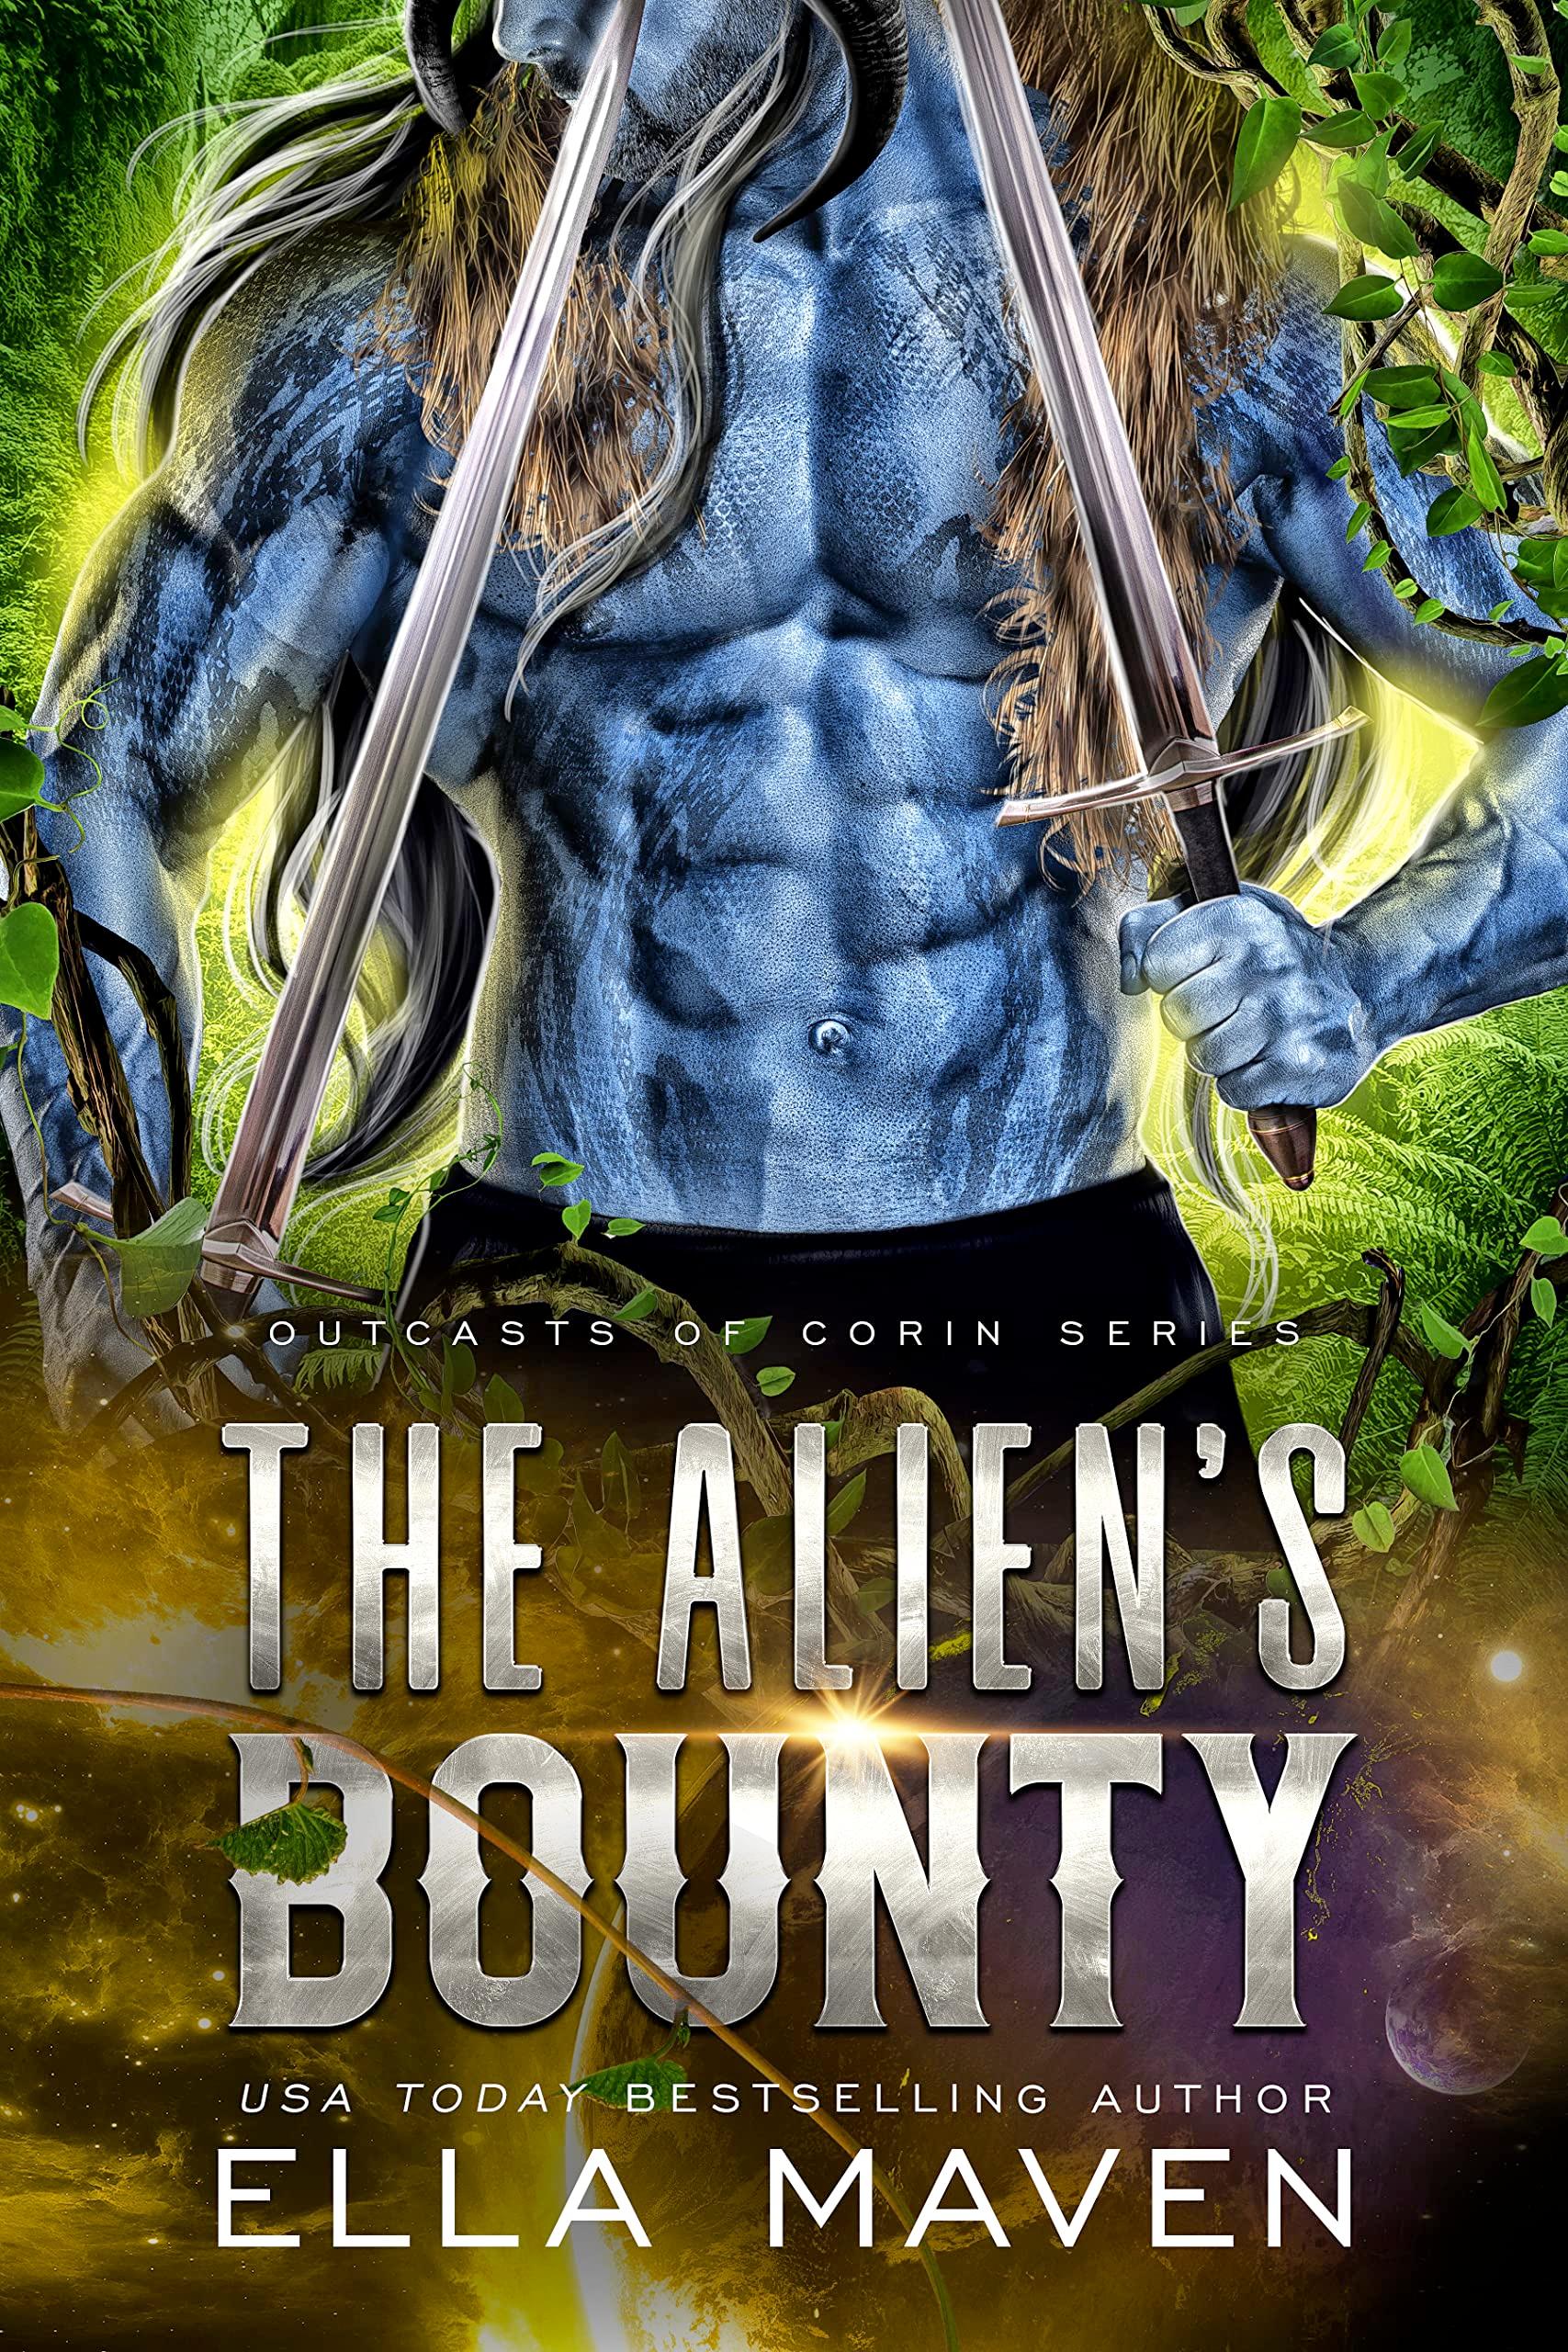 The Alien's Bounty